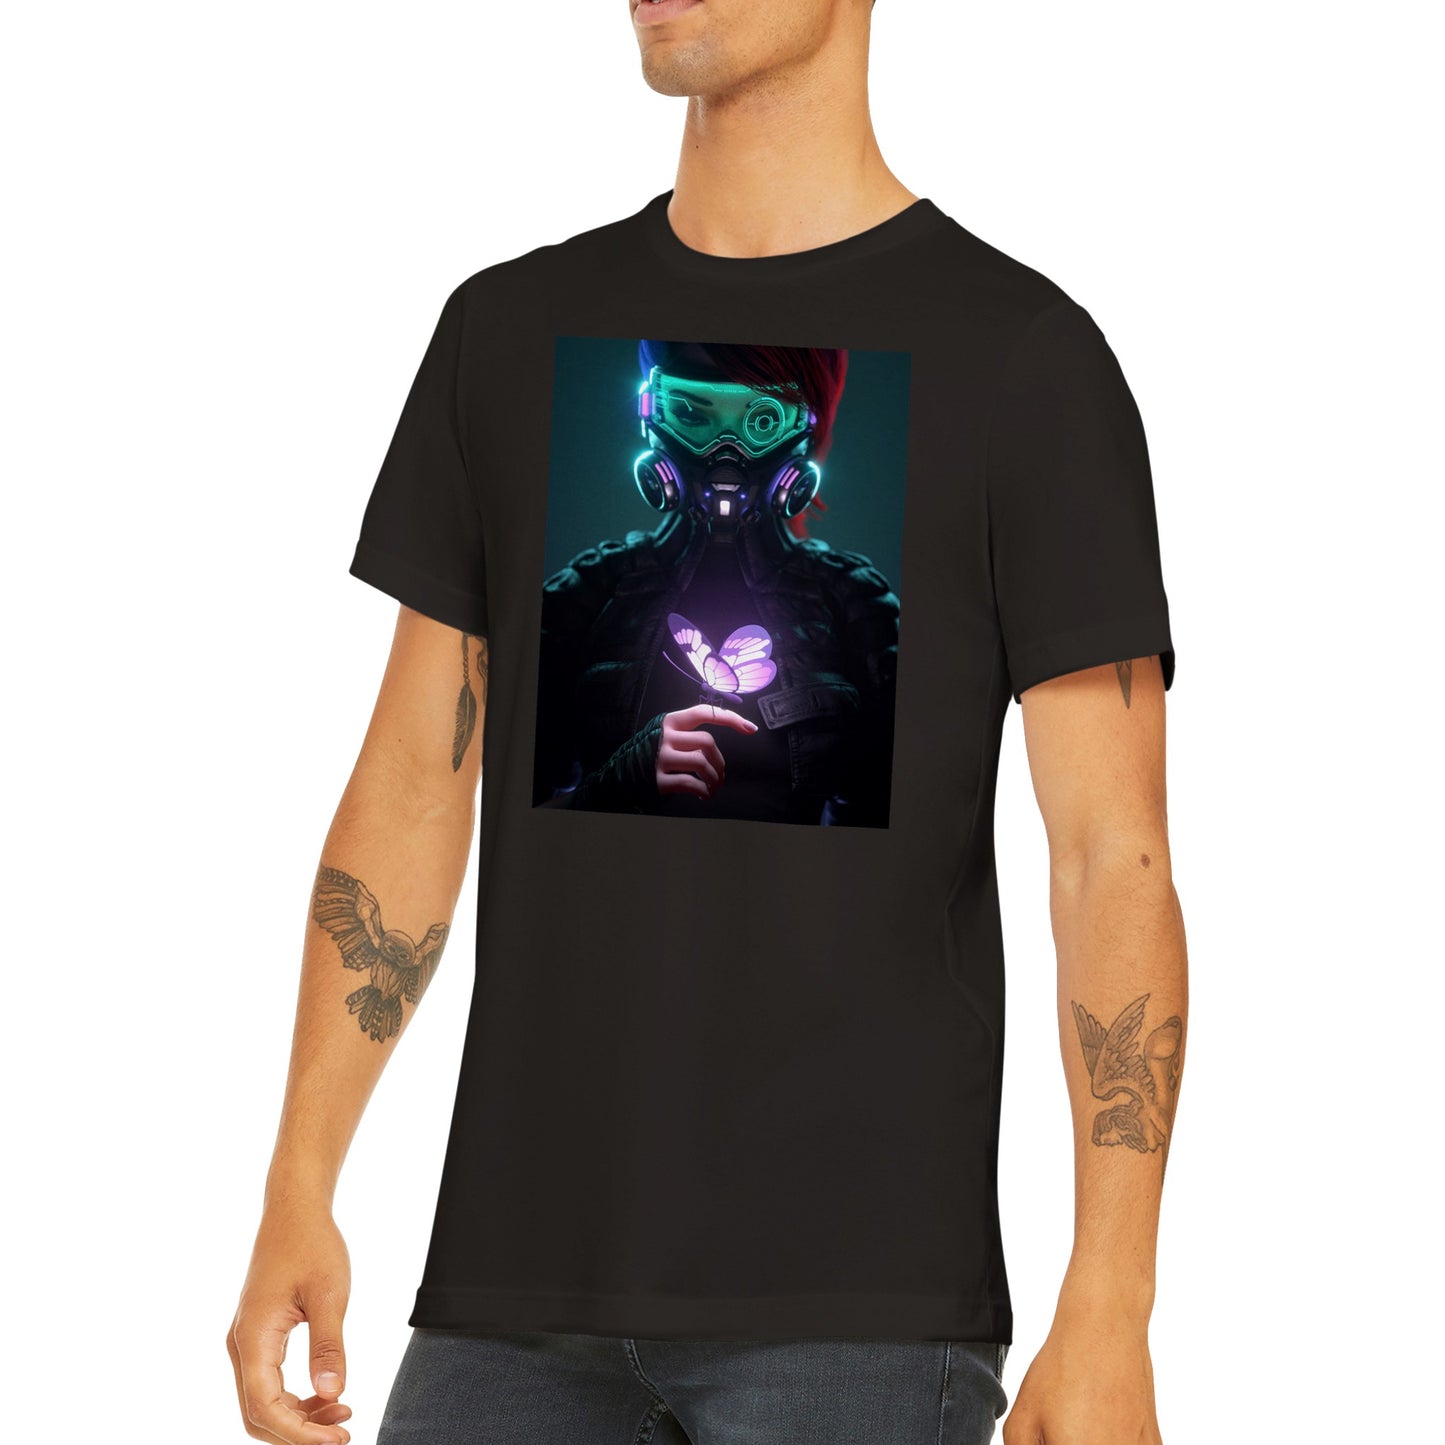 Cyberpunk girl T-shirt